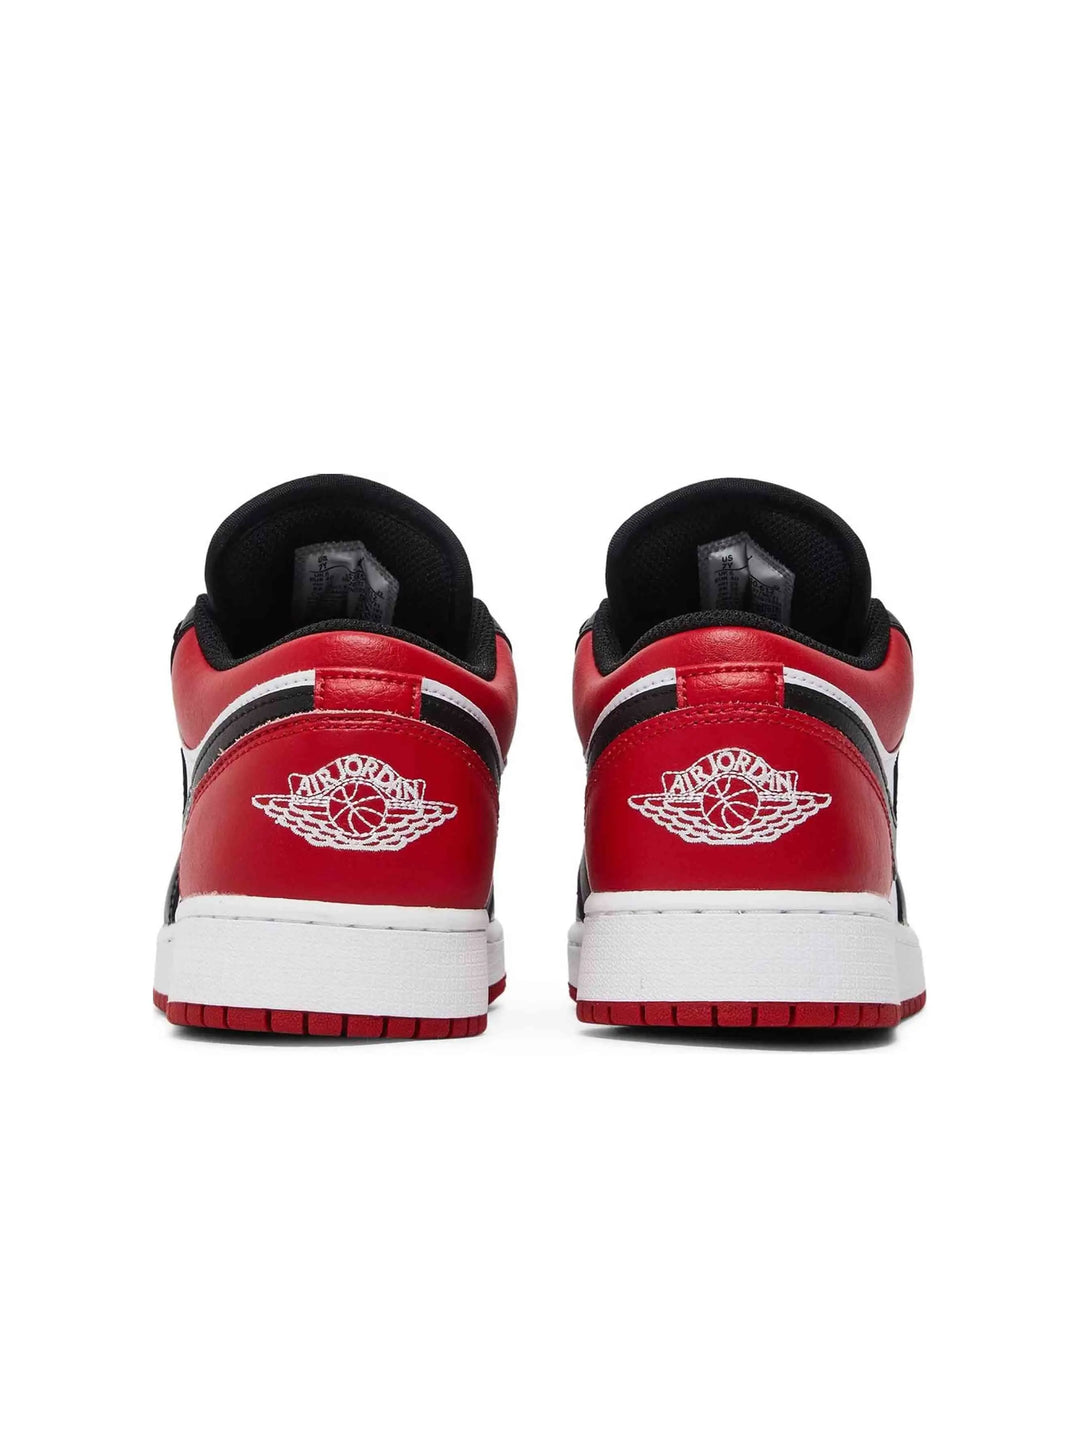 Nike Air Jordan 1 Low Bred Toe (GS) - Prior